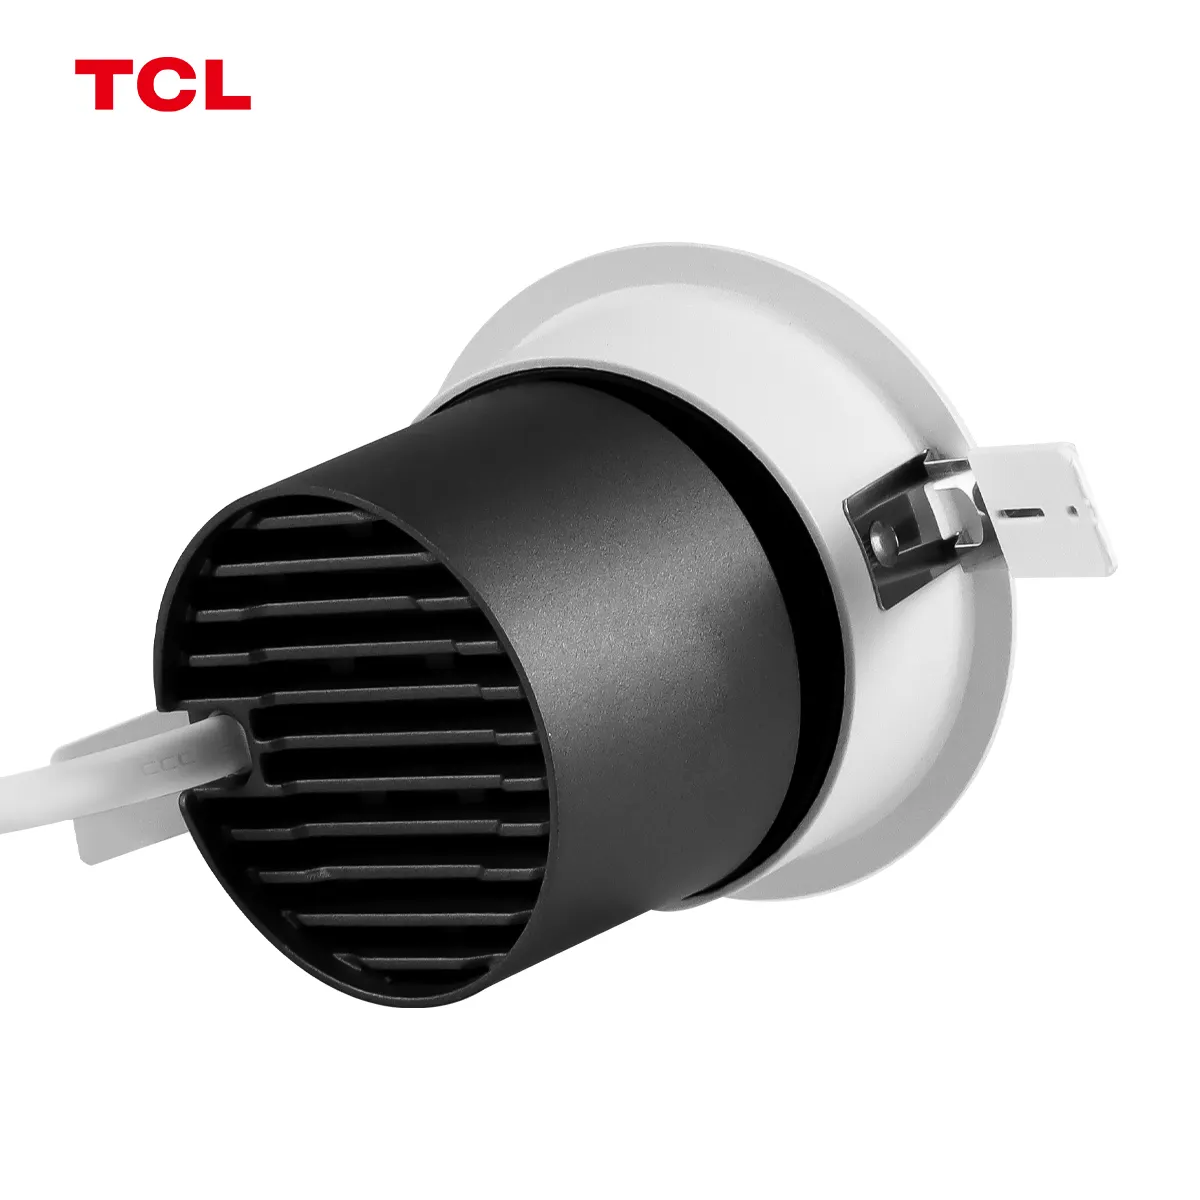 TCL 9W cri90 anti-reflexo spotlights embutidos em alumínio preto para iluminação doméstica sala de estar